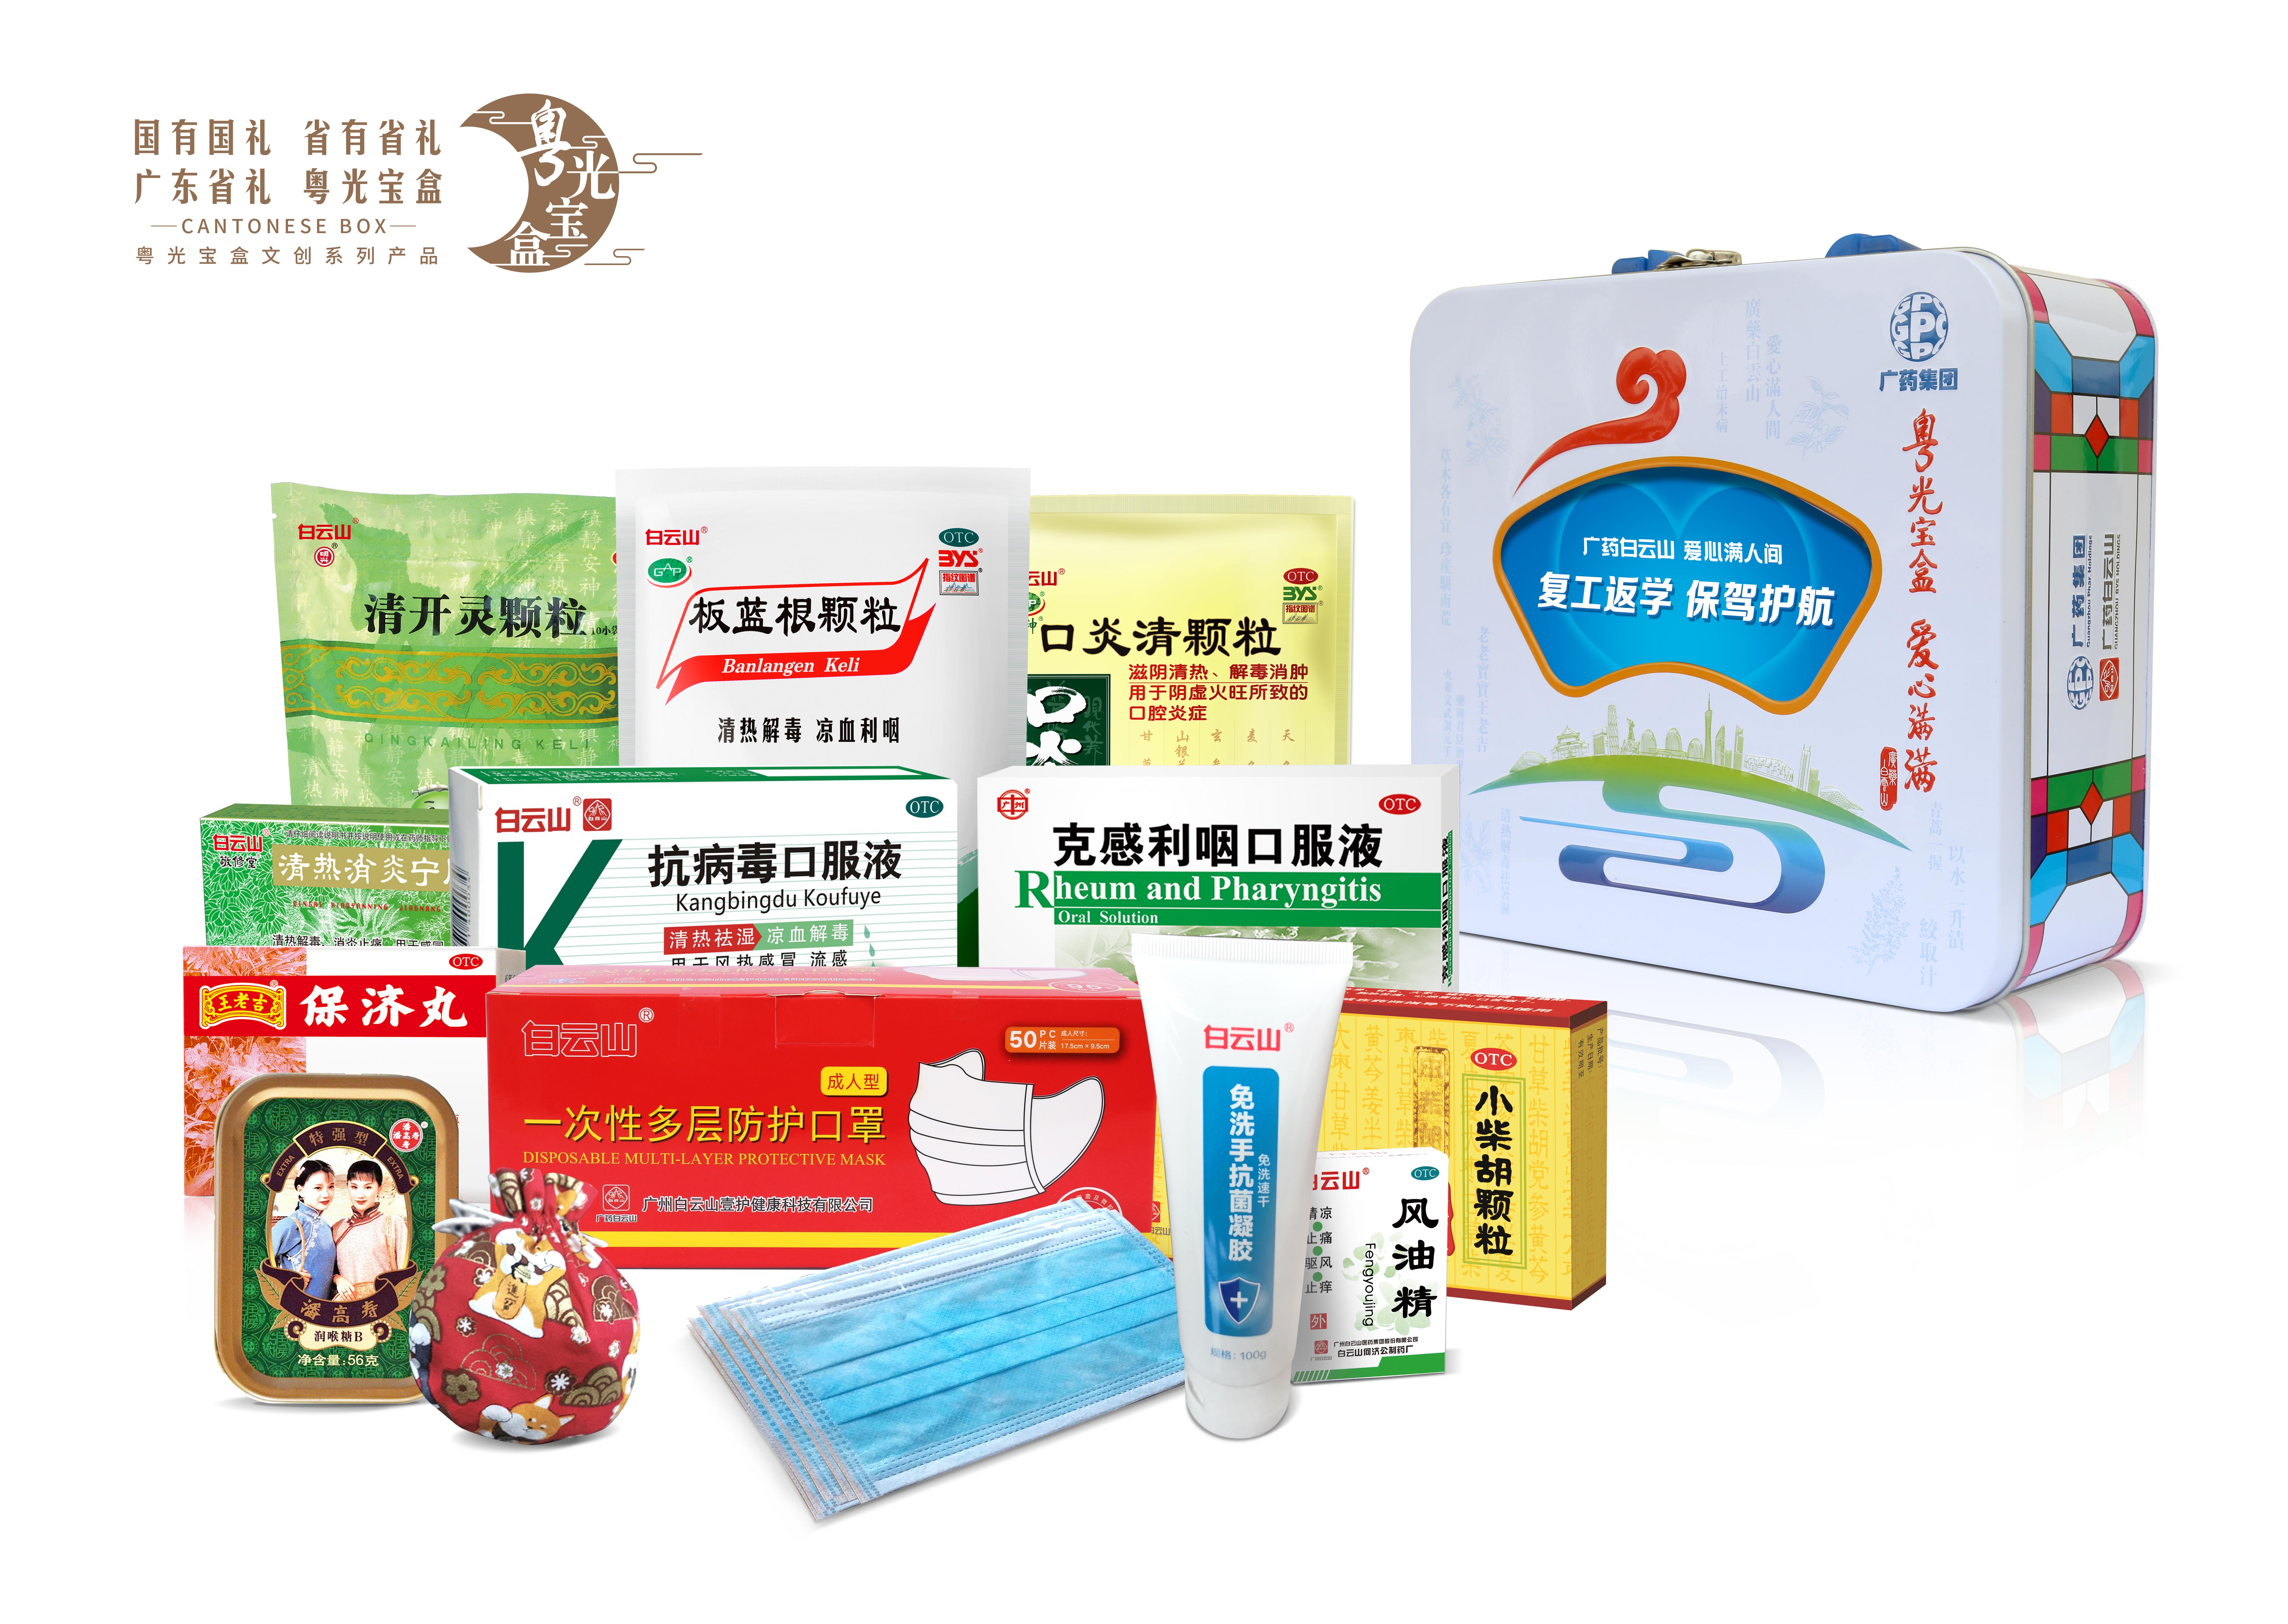 广州医药海马品牌整合传播有限公司